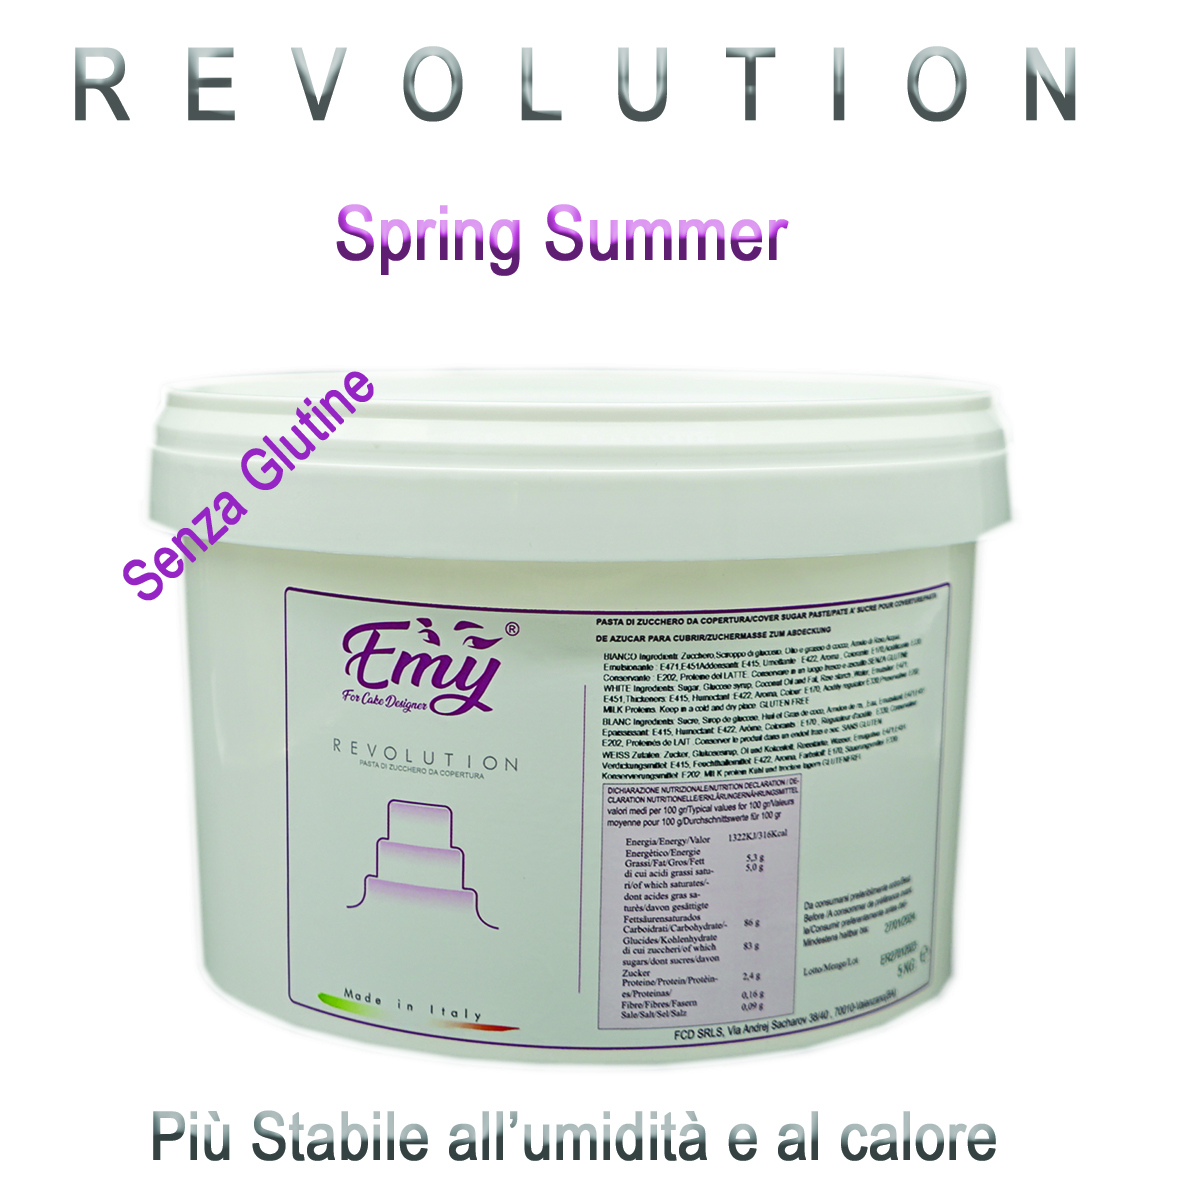  Foto: Pasta di zucchero - Emy Revolution Spring Summer 5 kg  Aroma Rum